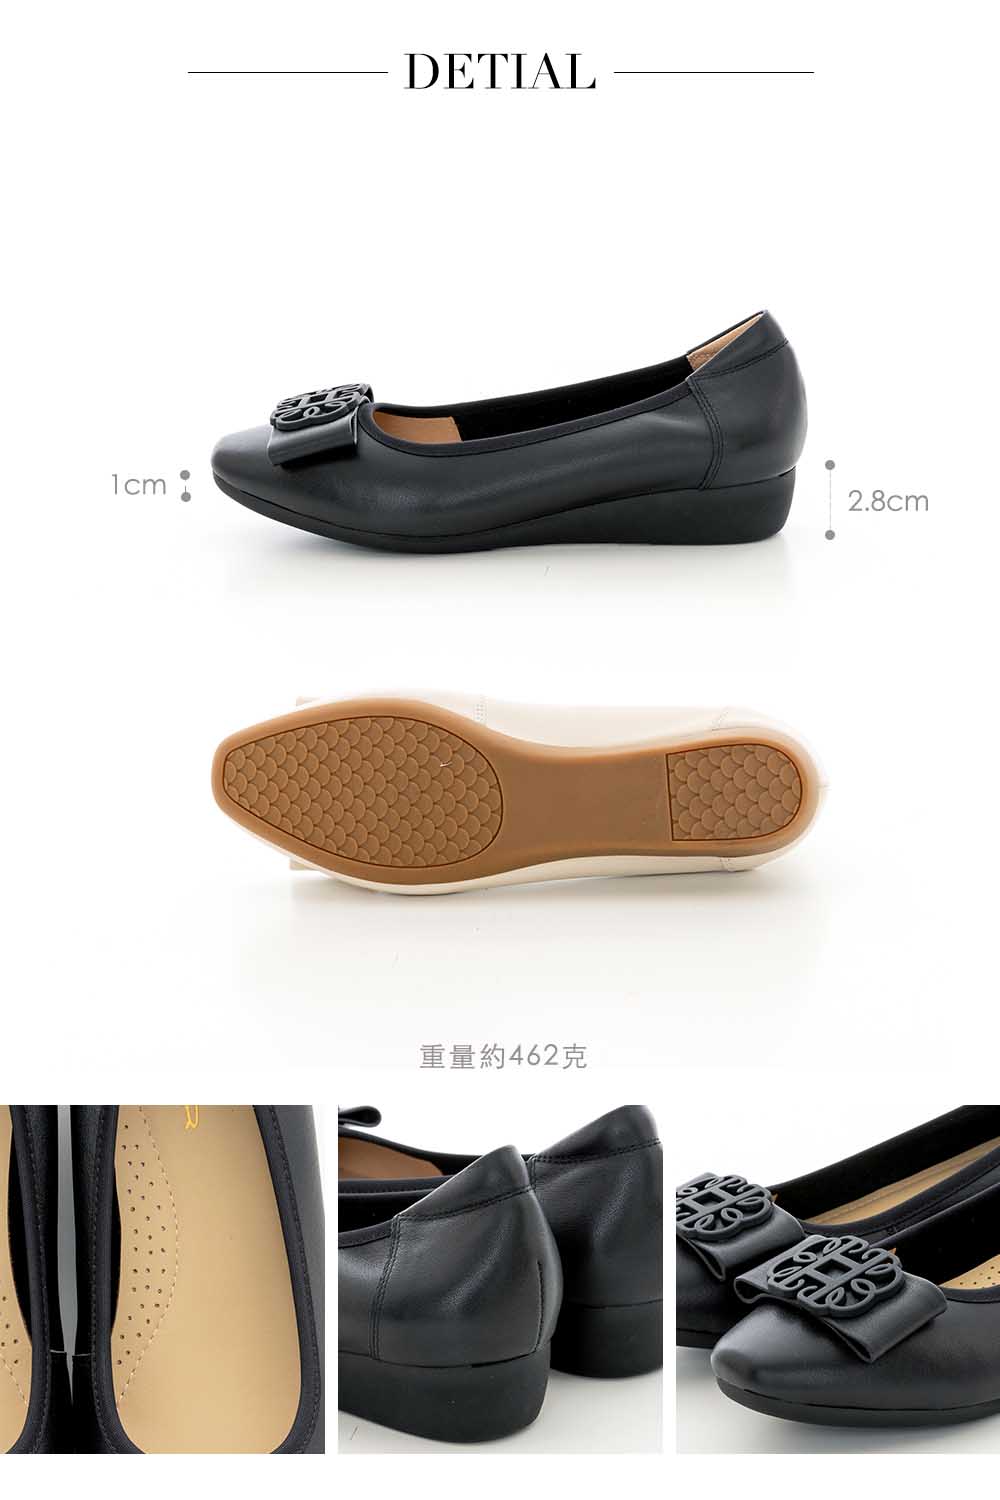 CUMAR 小方頭同面色飾釦楔型低跟鞋(黑色)折扣推薦